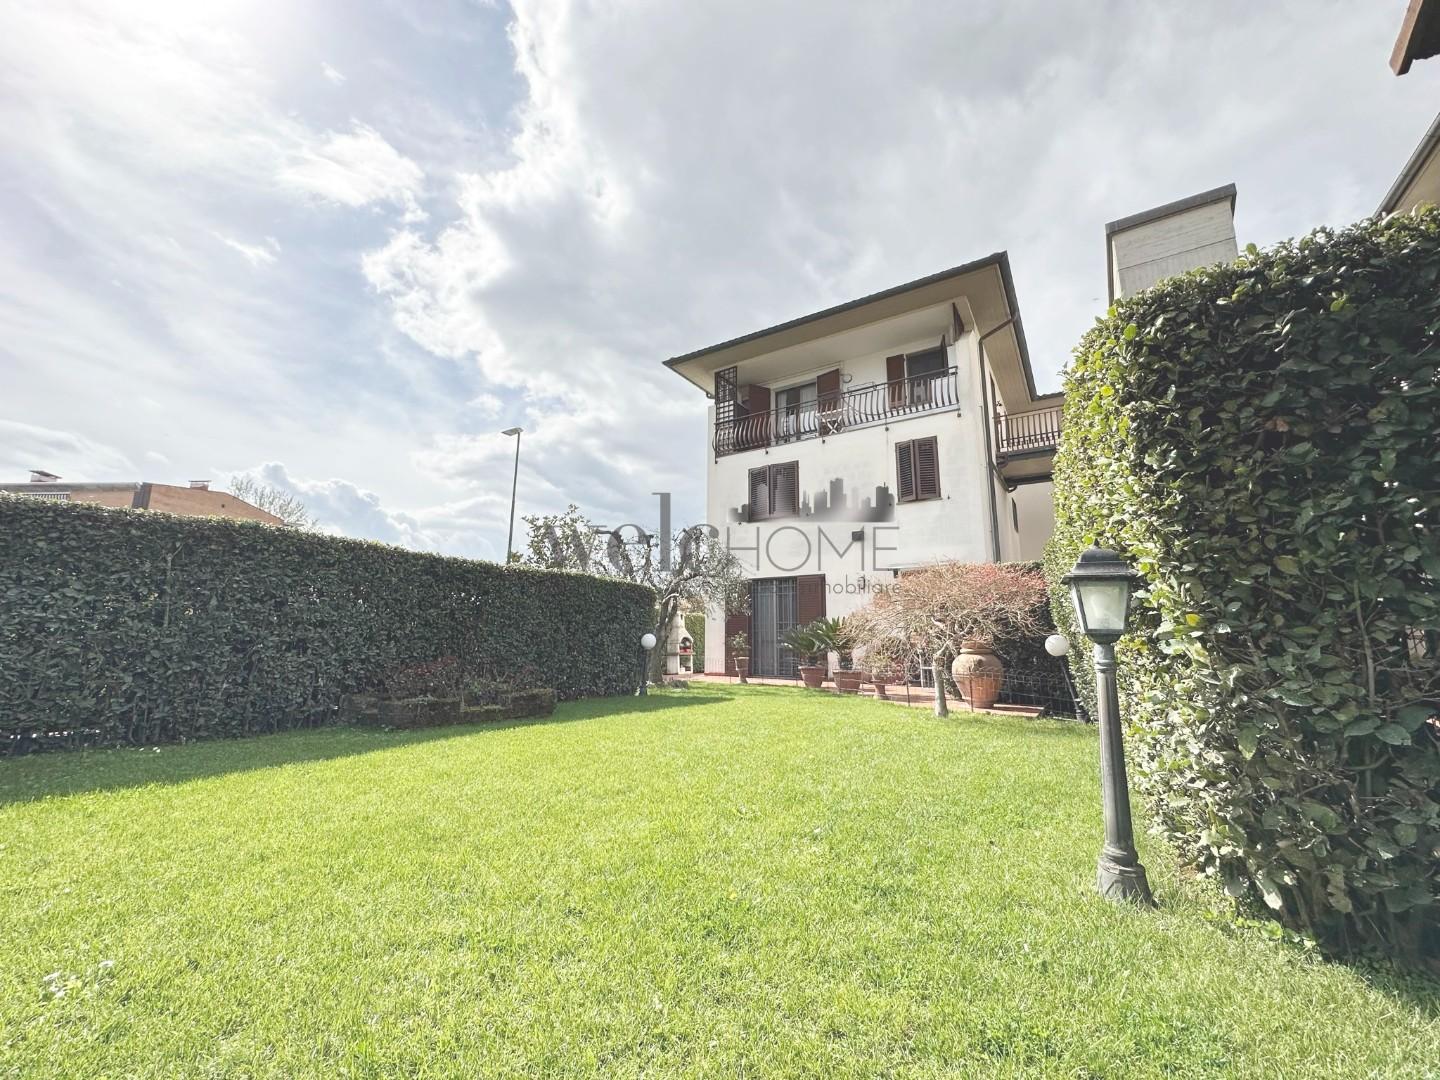 Villa a Schiera in vendita a Campi Bisenzio, 5 locali, prezzo € 480.000 | PortaleAgenzieImmobiliari.it